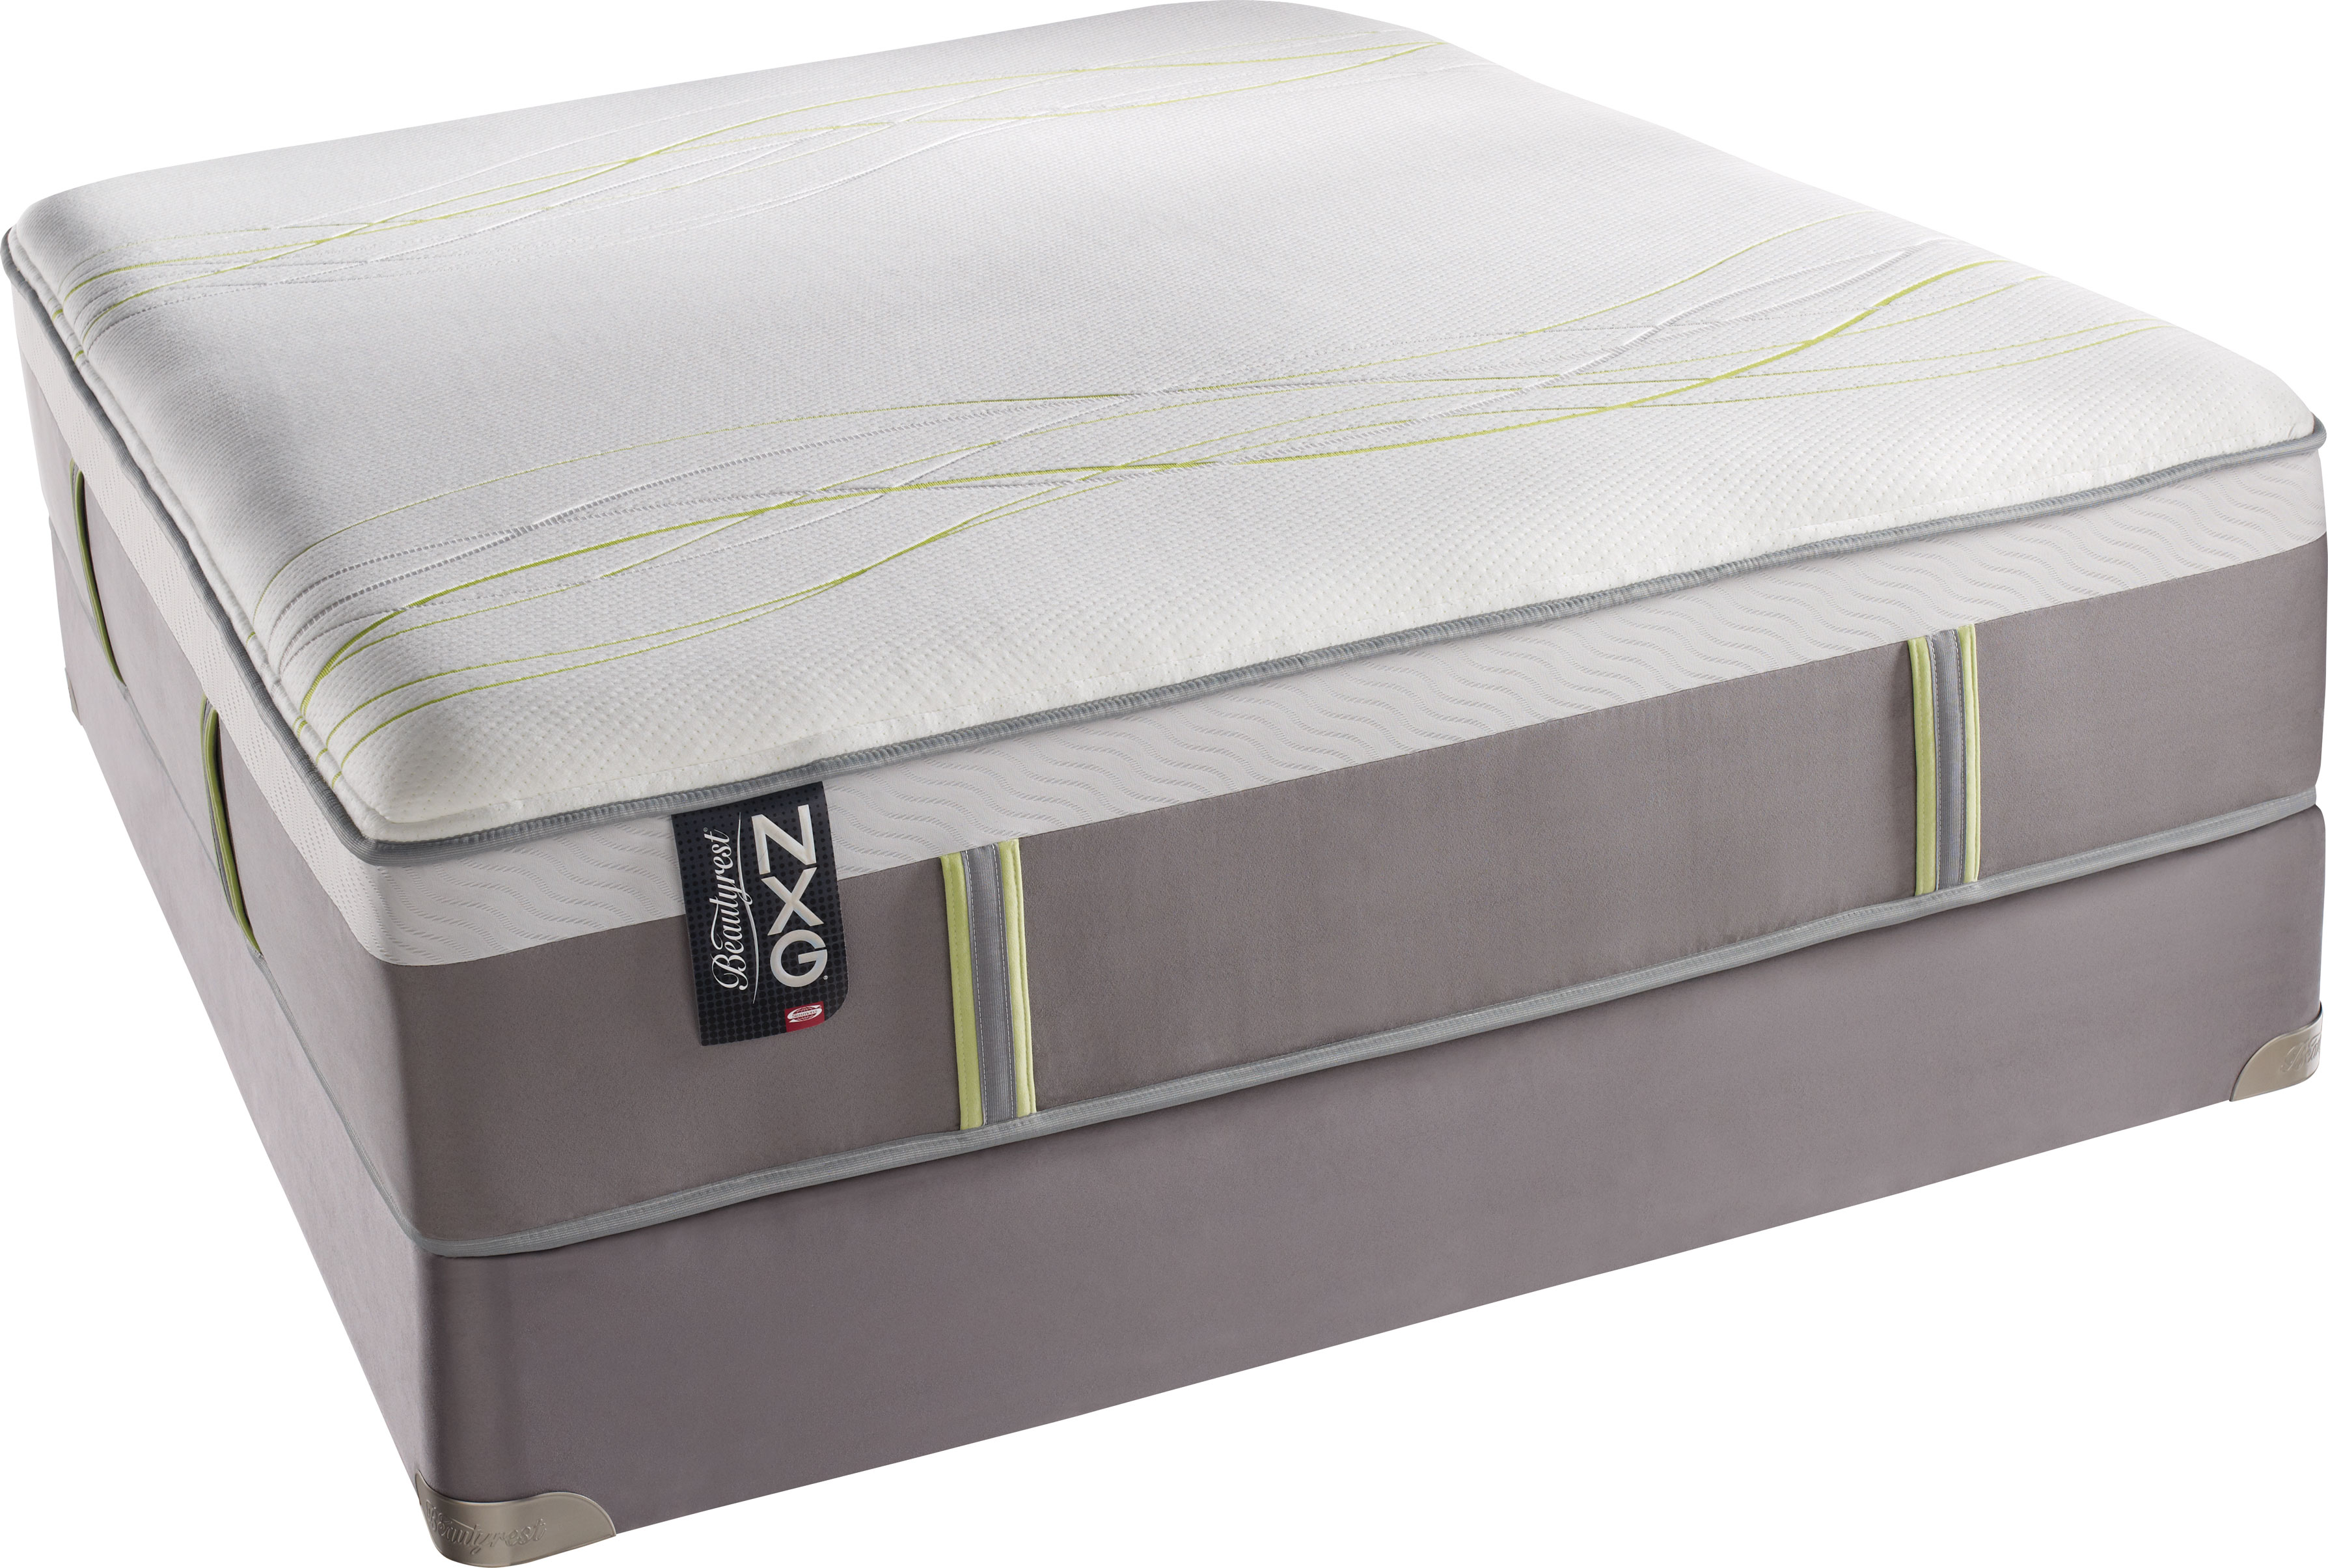 Top-Rated Mattresses Online from Plush mattress Simmons Beautyrest NXG 400 Firm...